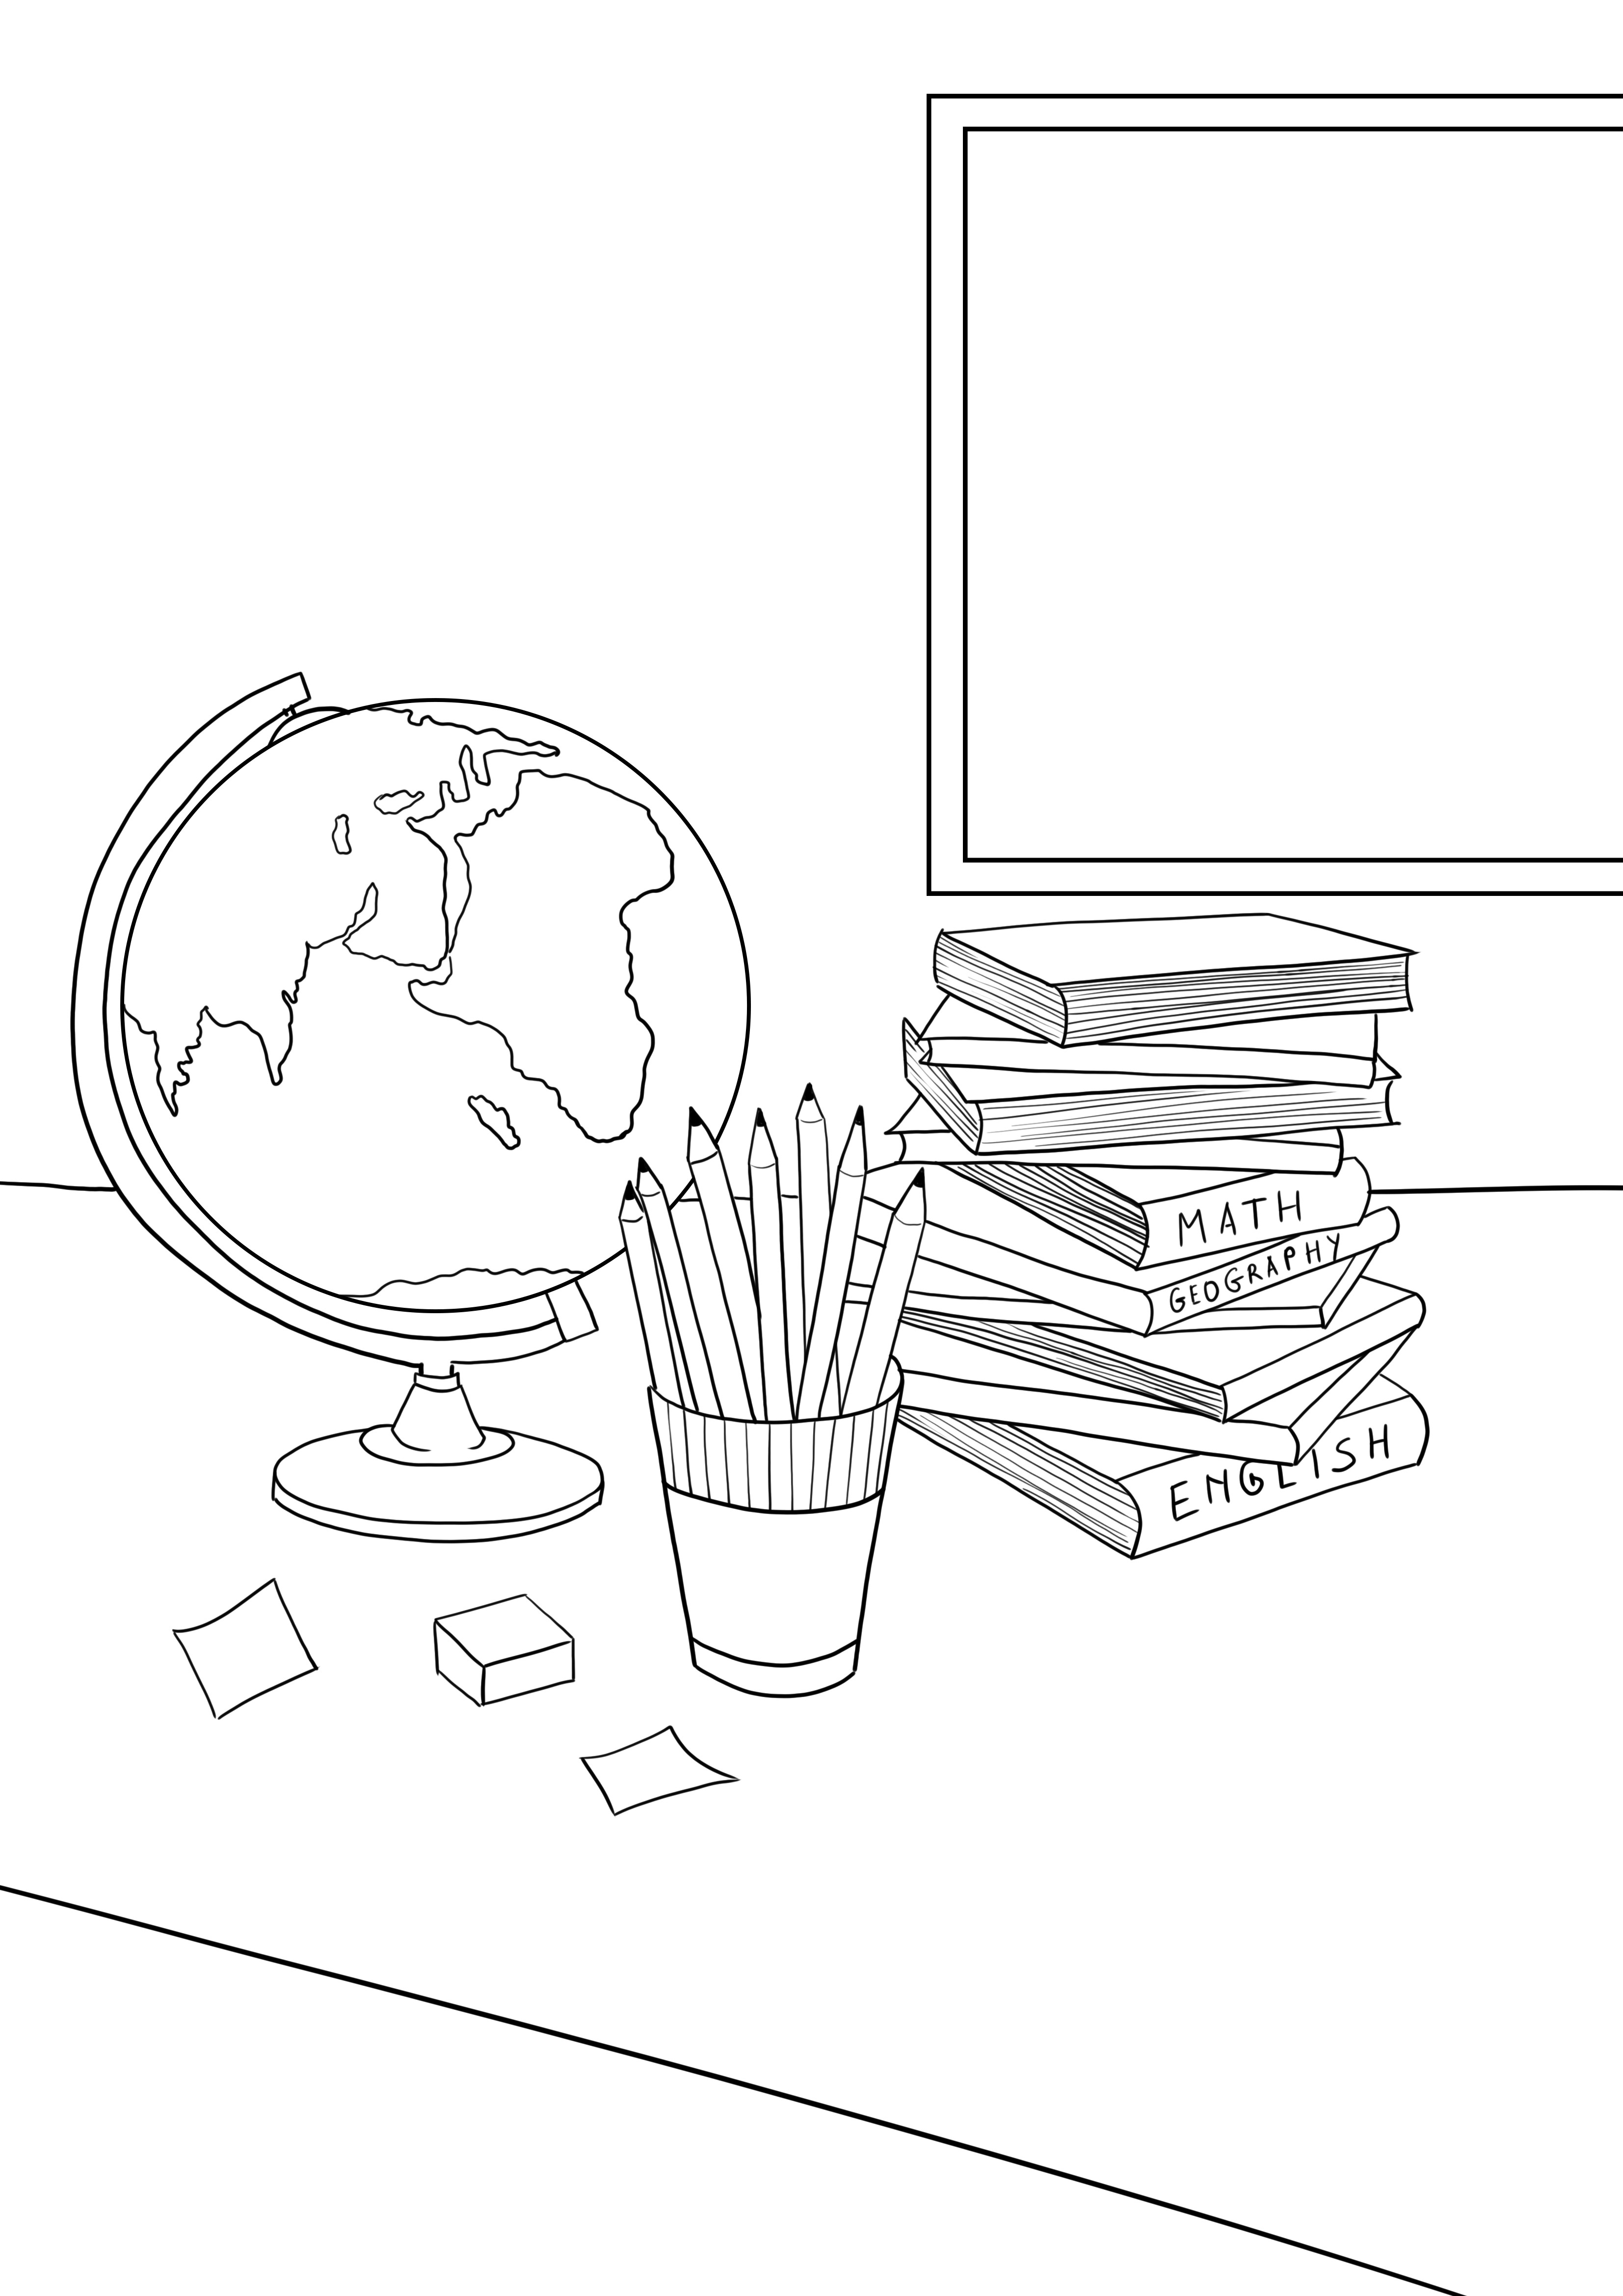 Schulbücher-Bleistifte-Globus zum kostenlosen Ausdrucken für Kinder jeden Alters